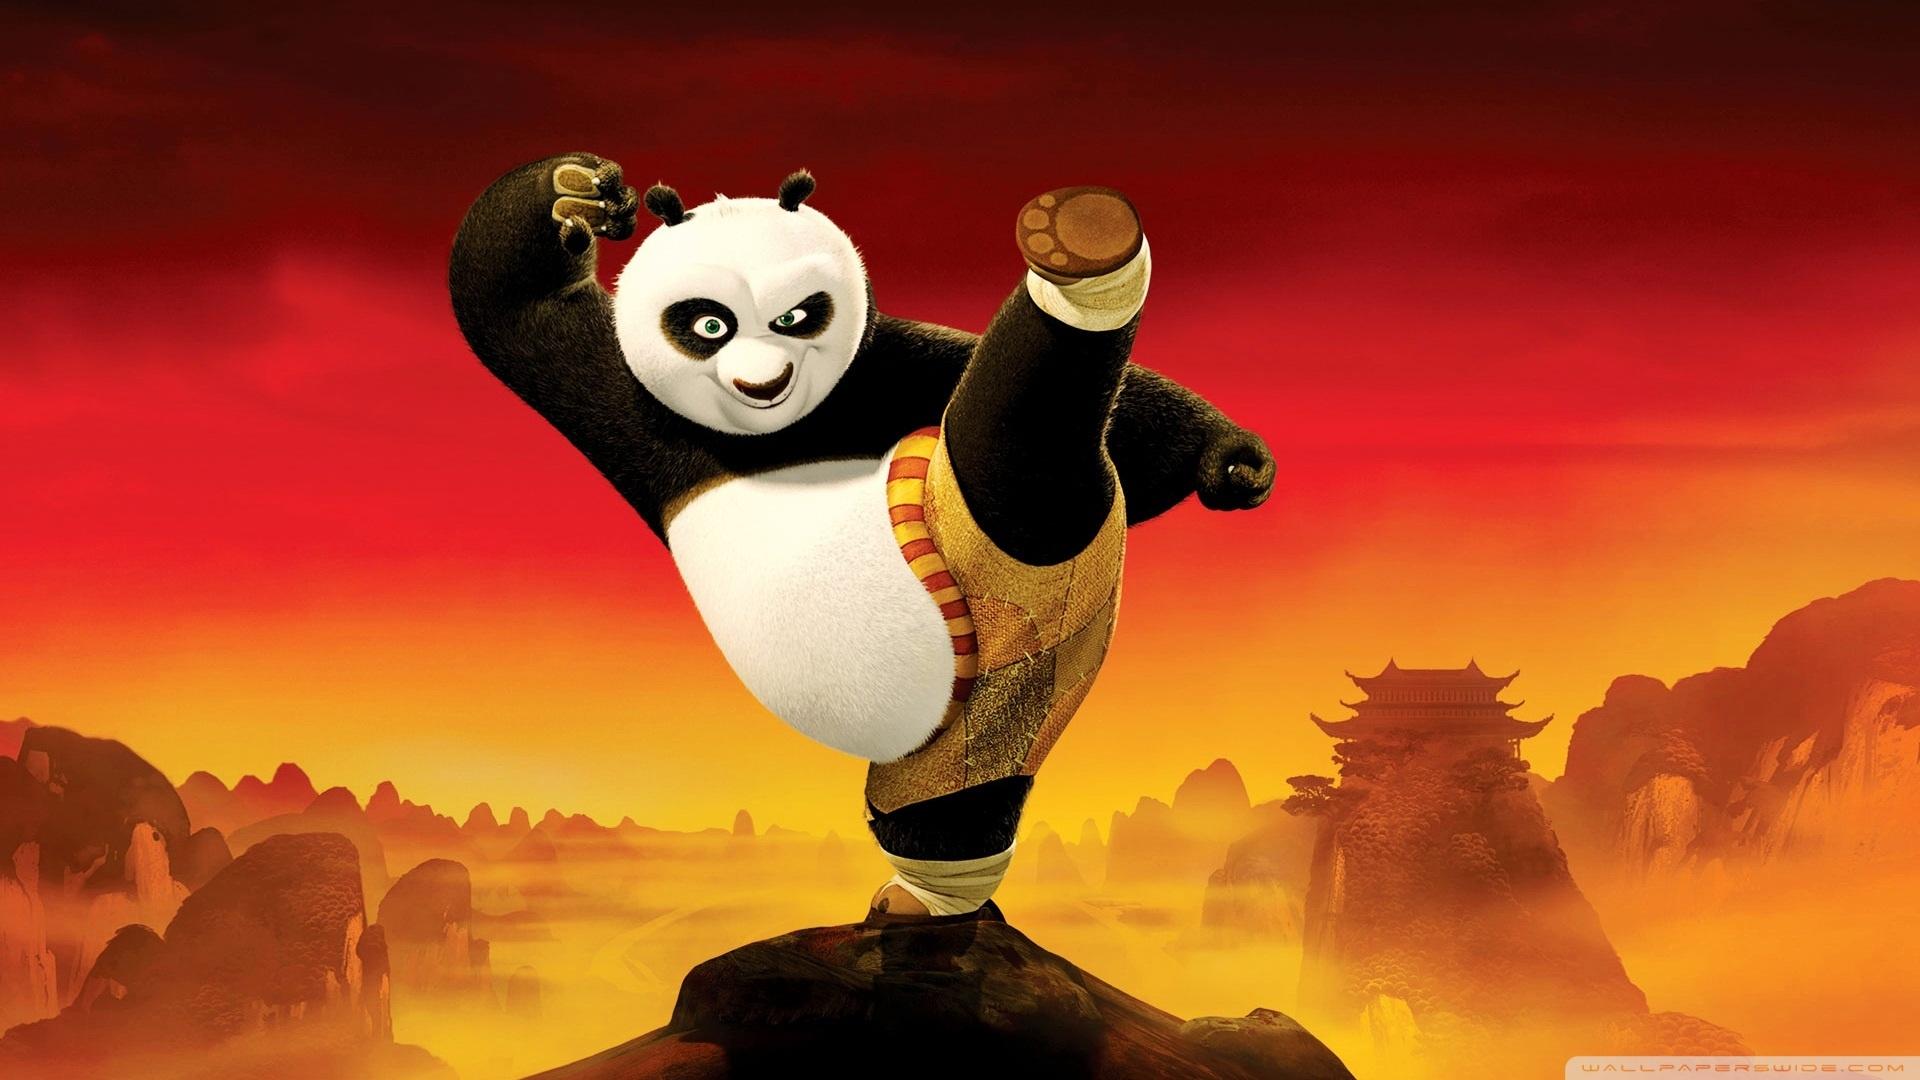 Kung Fu Panda 2 at 1024 x 1024 iPad size wallpapers HD quality